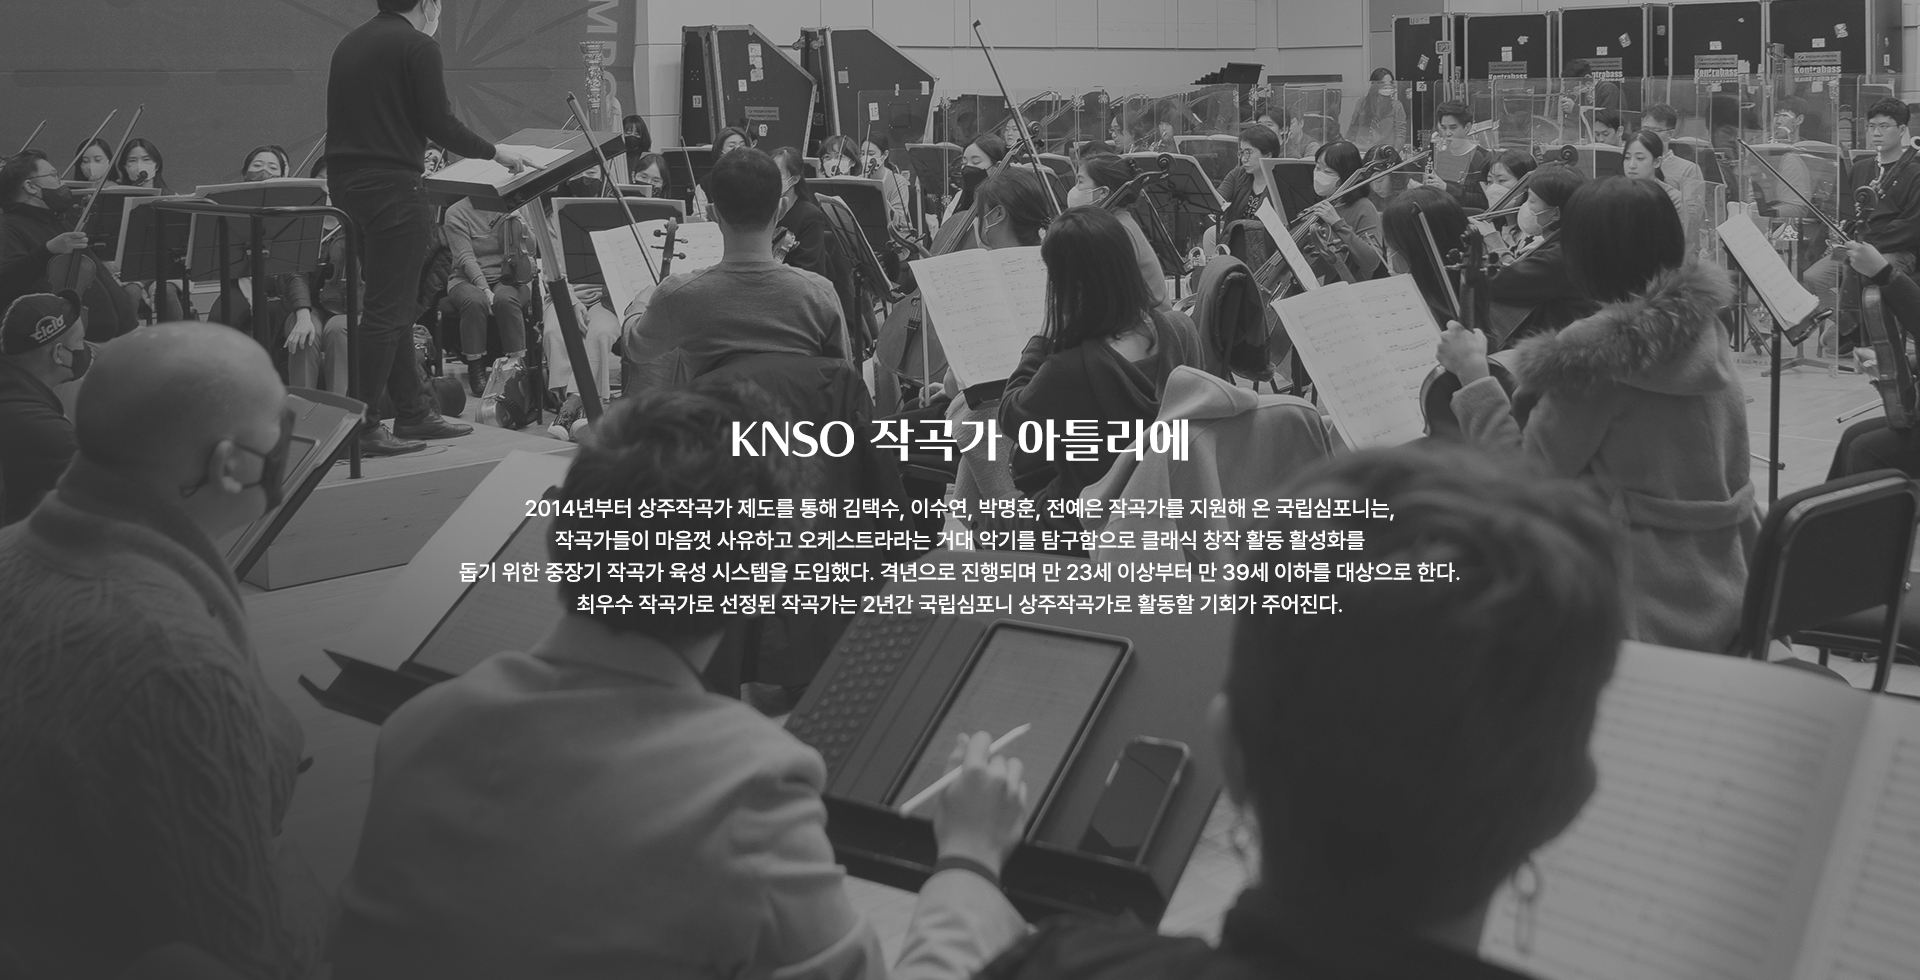 KNSO 작곡가 아틀리에 2014년부터 상주작곡가 제도를 통해 김택수, 이수연, 박명훈, 전예은 작곡가를 지원해 온 국립심포니는,작곡가들이 마음껏 사유하고 오케스트라라는 거대 악기를 탐구함으로 클래식 창작 활동 활성화를 돕기 위한 중장기 작곡가 육성 시스템을 도입했다. 격년으로 진행되며 만 23세 이상부터 만 39세 이하를 대상으로 한다. 최우수 작곡가로 선정된 작곡가는 2년간 국립심포니 상주작곡가로 활동할 기회가 주어진다.